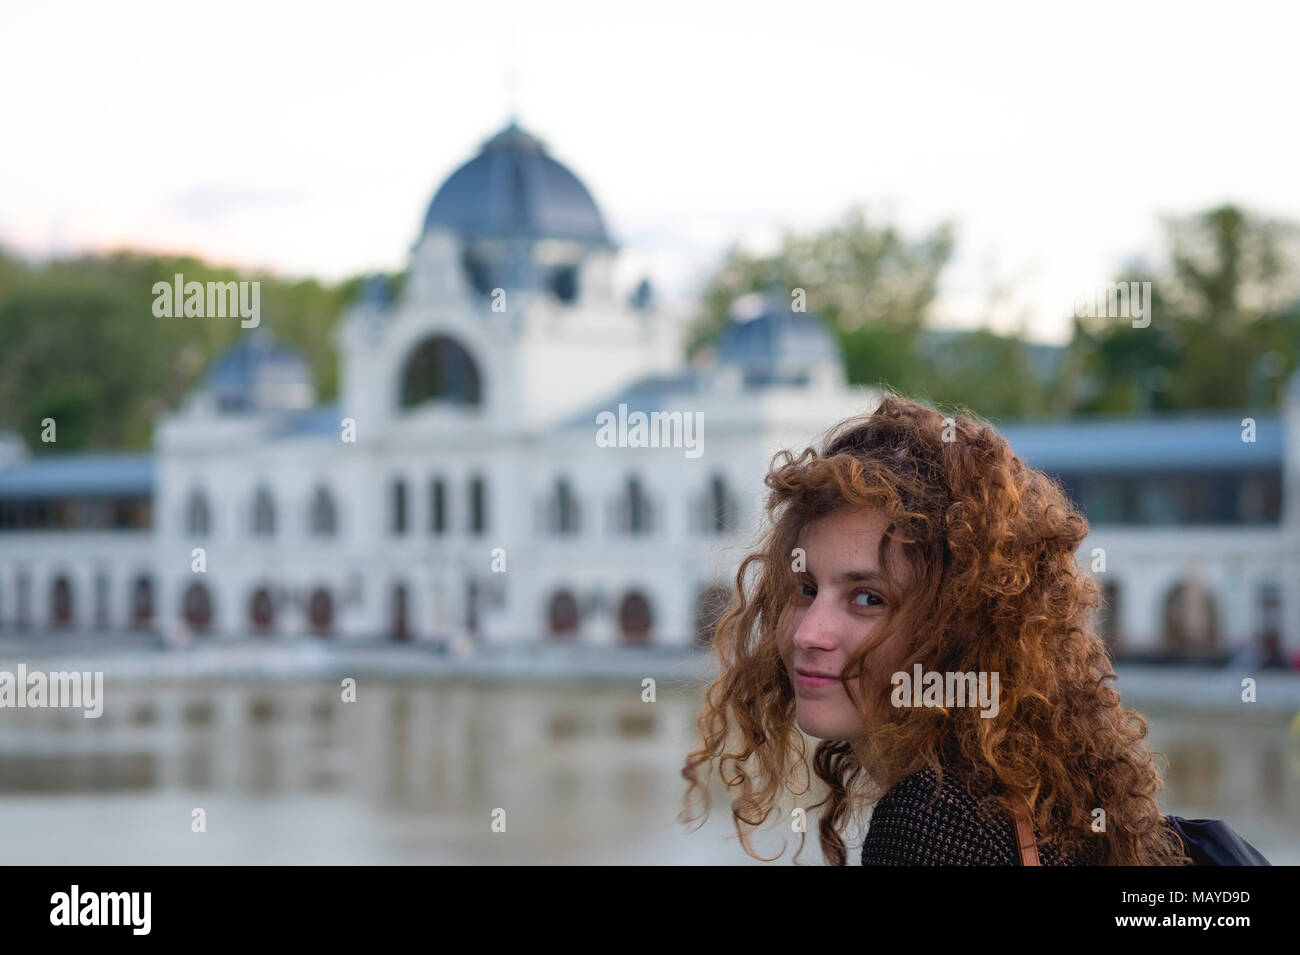 Carino redhead girl guardando la telecamera sorridendo con un bianco edificio barocco in background Foto Stock